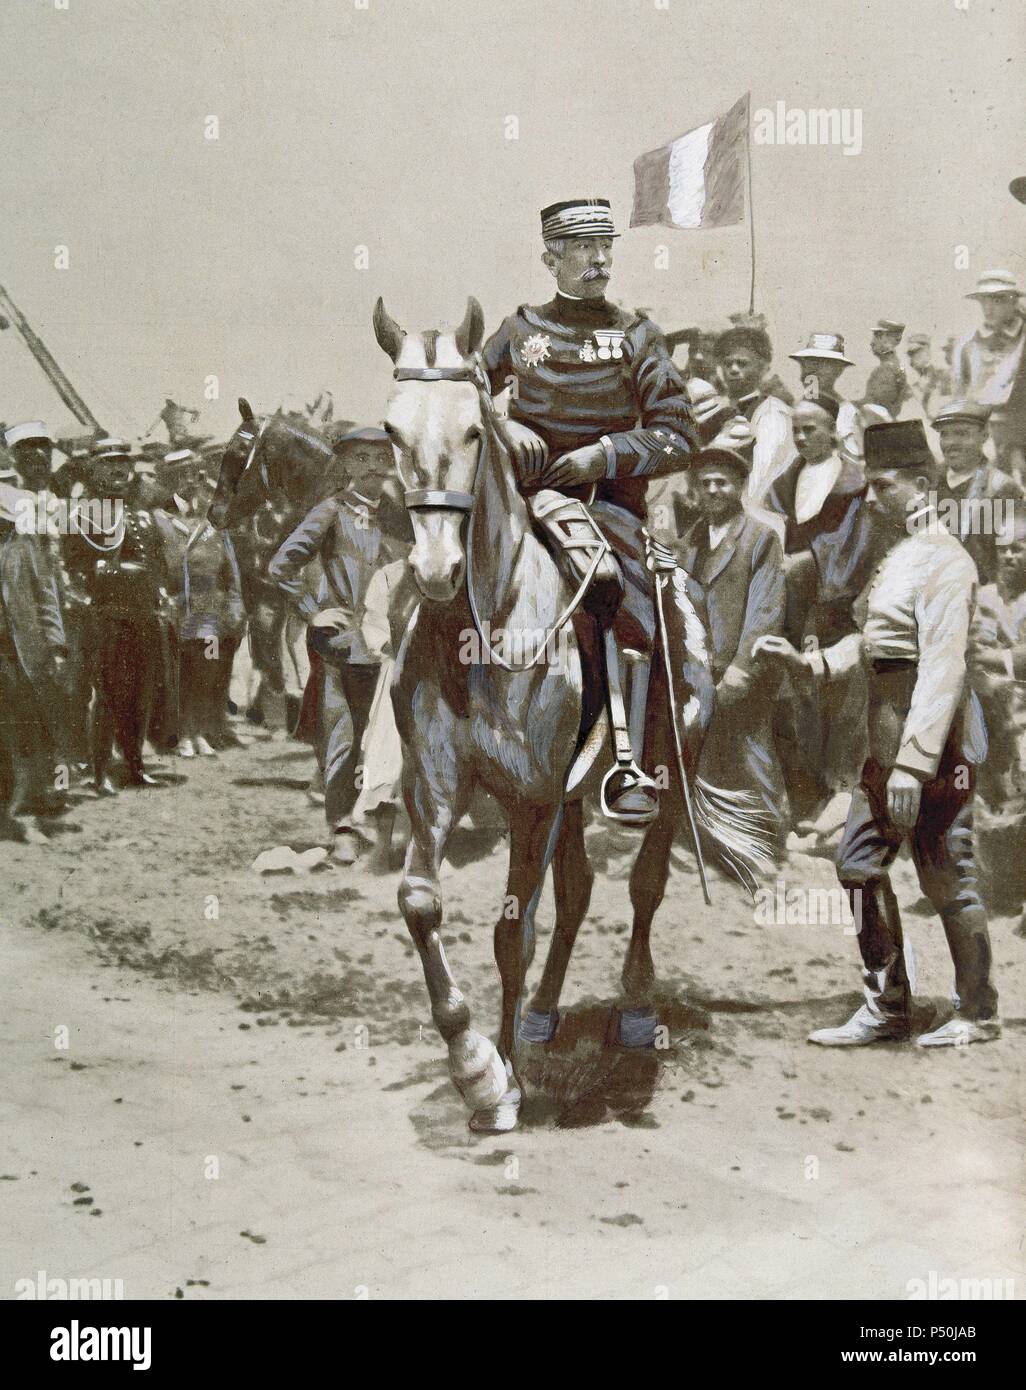 LYAUTEY, Louis Hubert Gonzalve (Nancy,1854-Thorey 1934). Mariscal de Francia. Ocupó el cargo de Residente General de Marruecos entre los años 1912 y 1925. 'LYAUTEY EN MARRUECOS (1912) '. Grabado de L'Illustration. Stock Photo